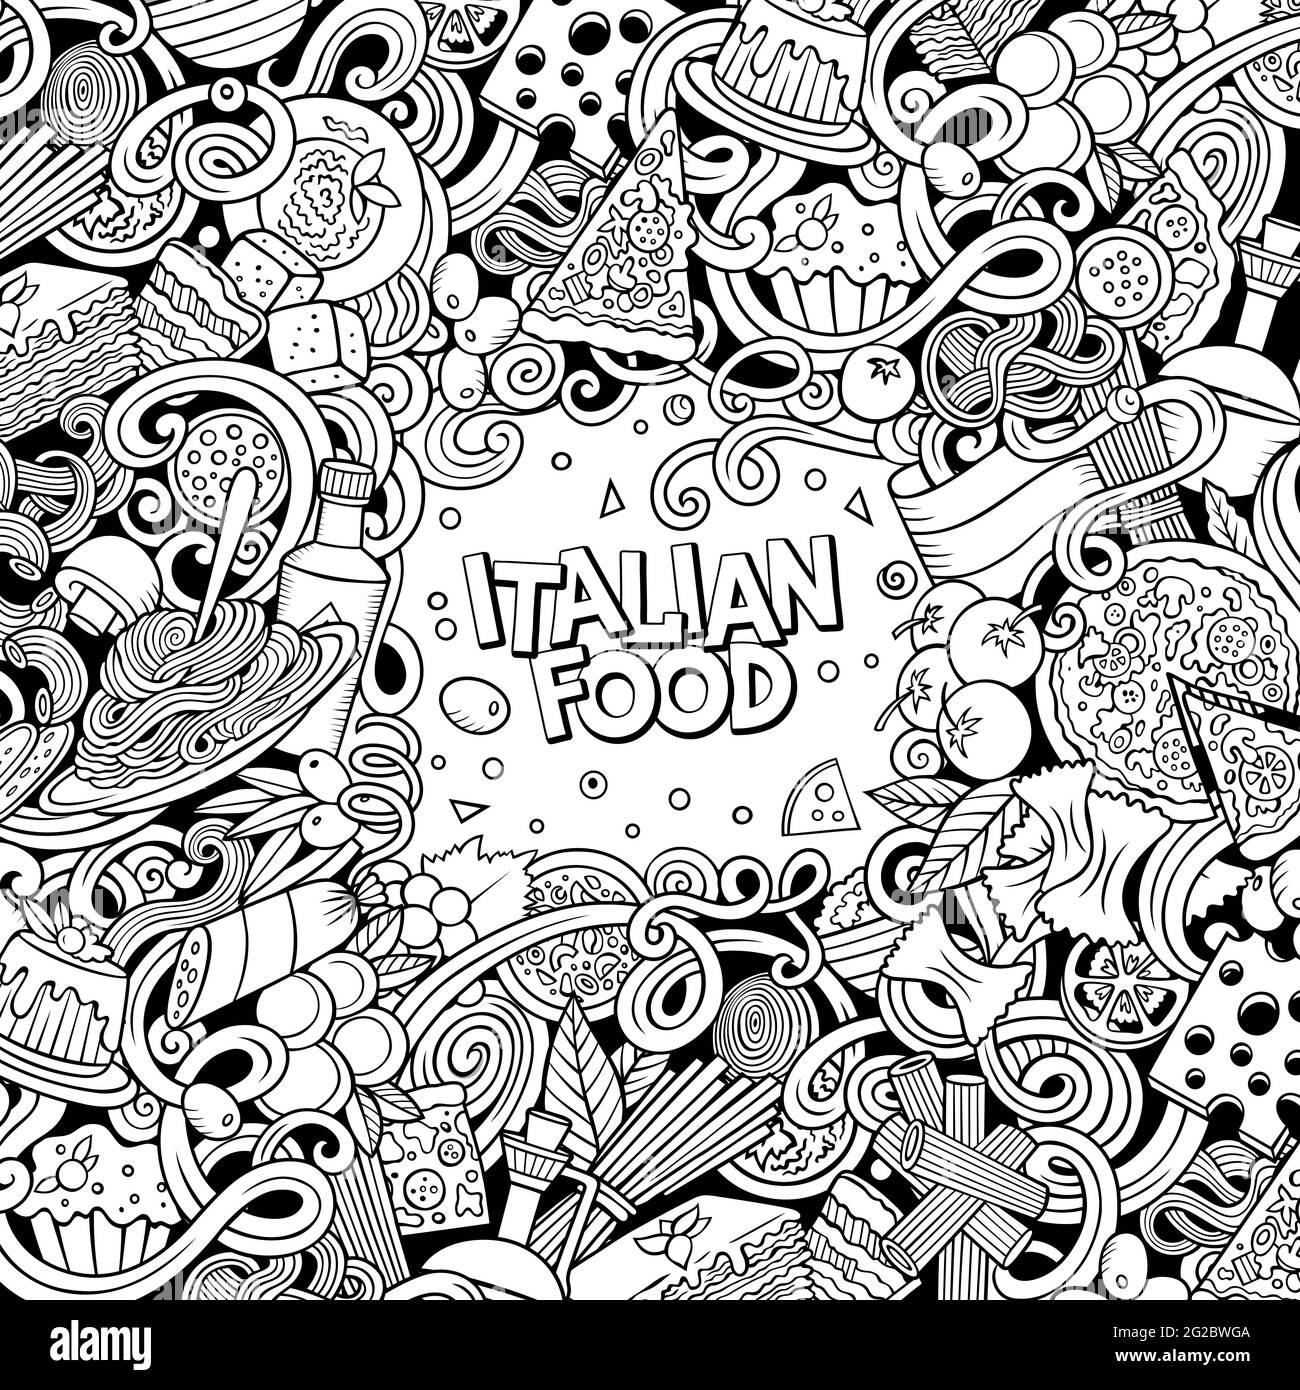 Cartoon-Vektor kritzelt italienischen Lebensmittelrahmen. Skizzenhaft, detailliert, mit vielen Objekten im Hintergrund. Alle Objekte getrennt. Stock Vektor